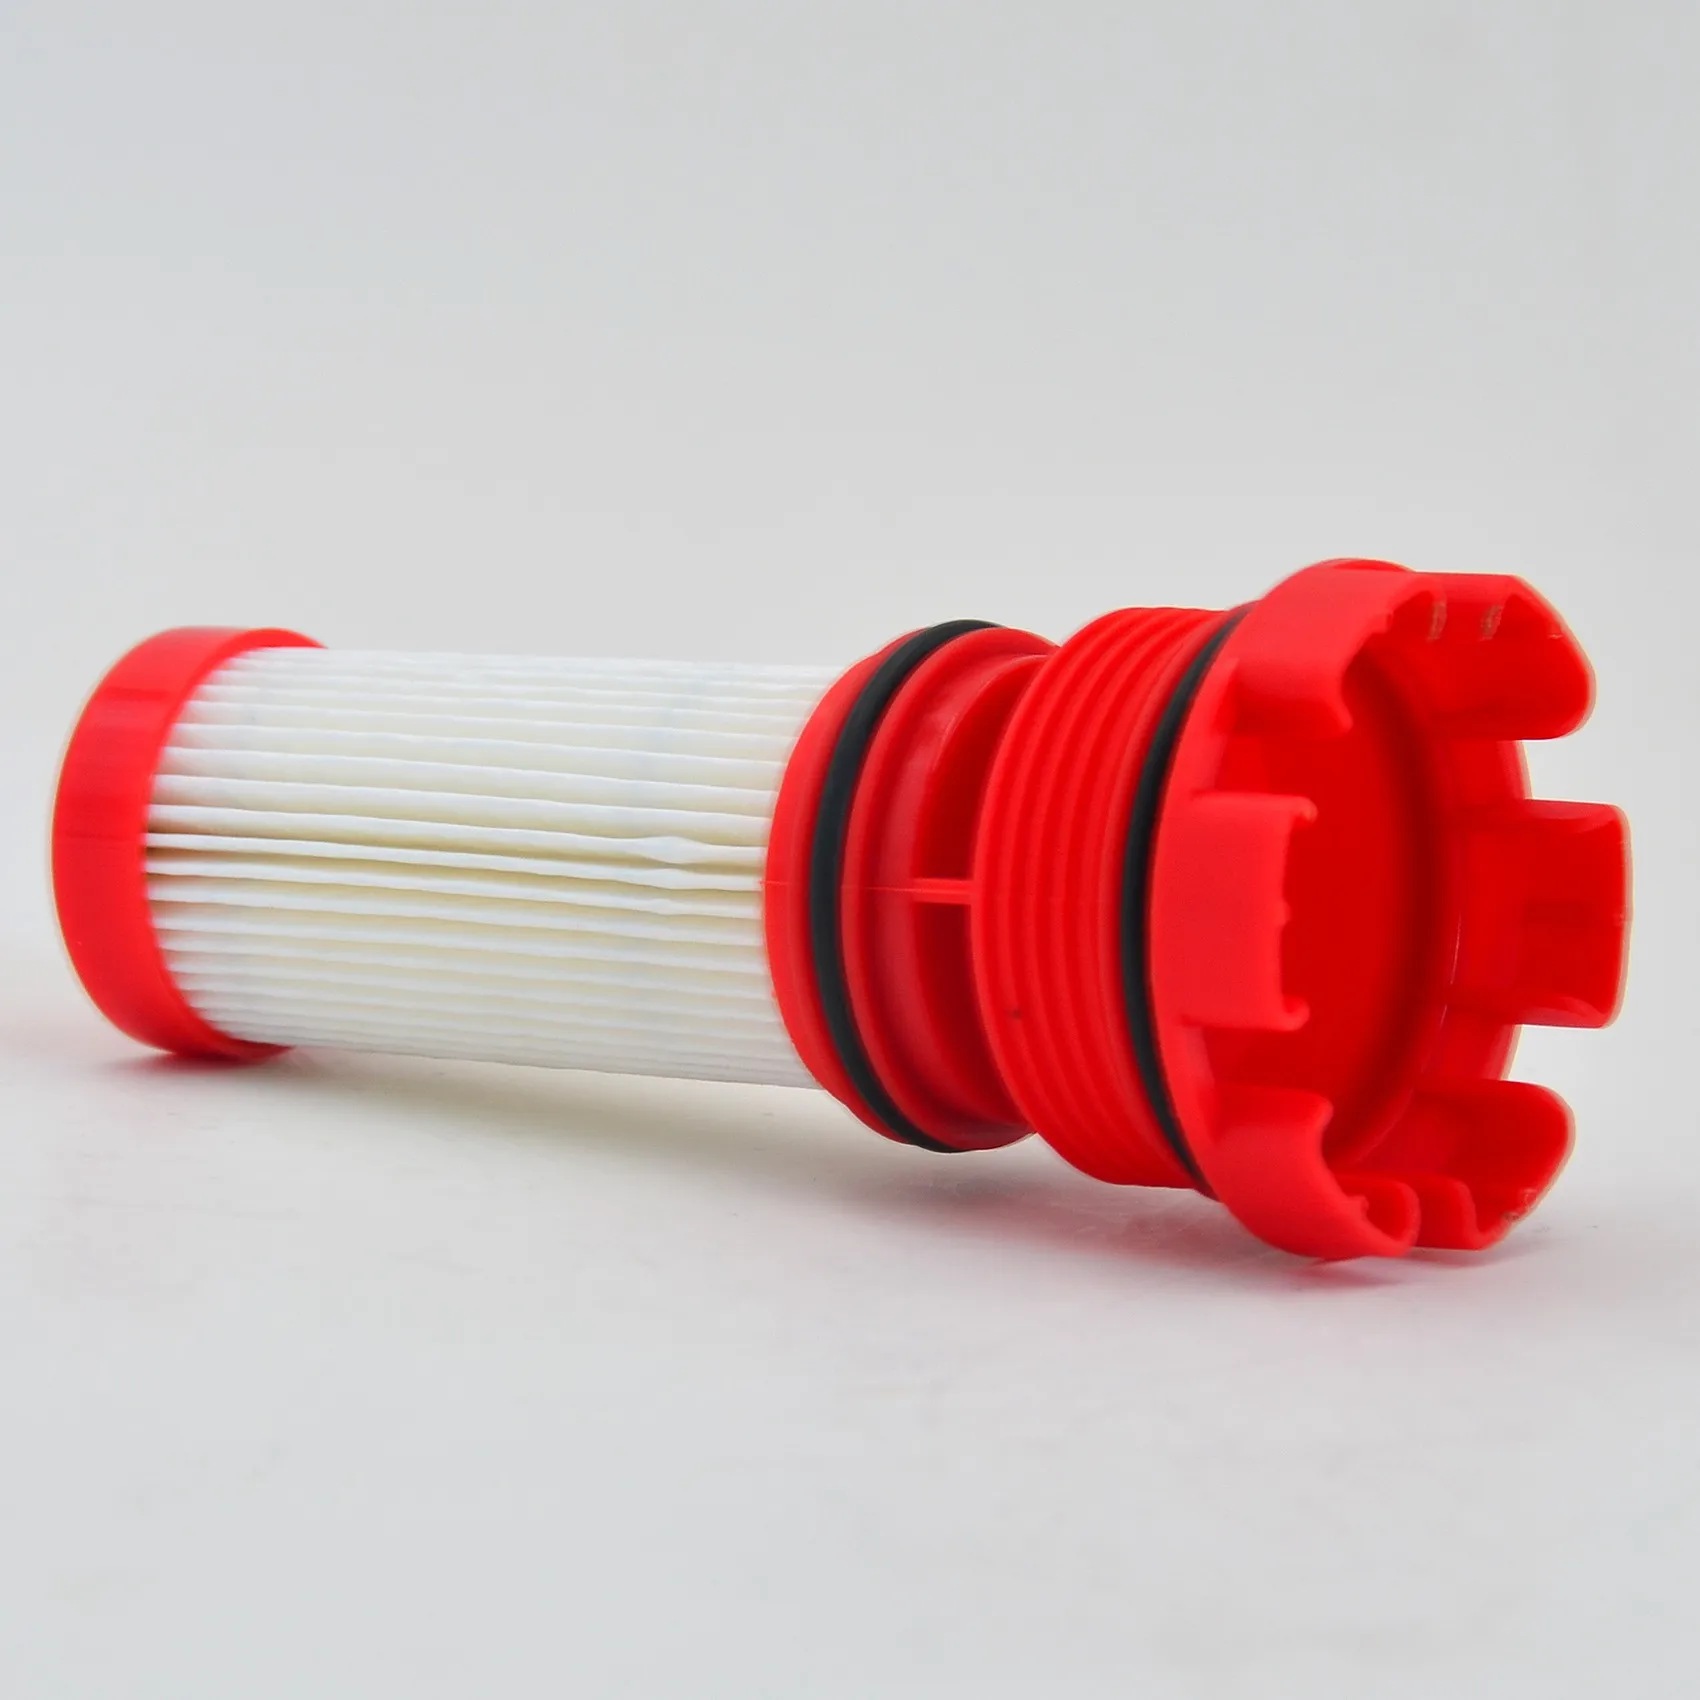 Новый топливный фильтр красного цвета, подходящий для двигателей FORD Mercury Optimax/Verado 8M0020349 884380T